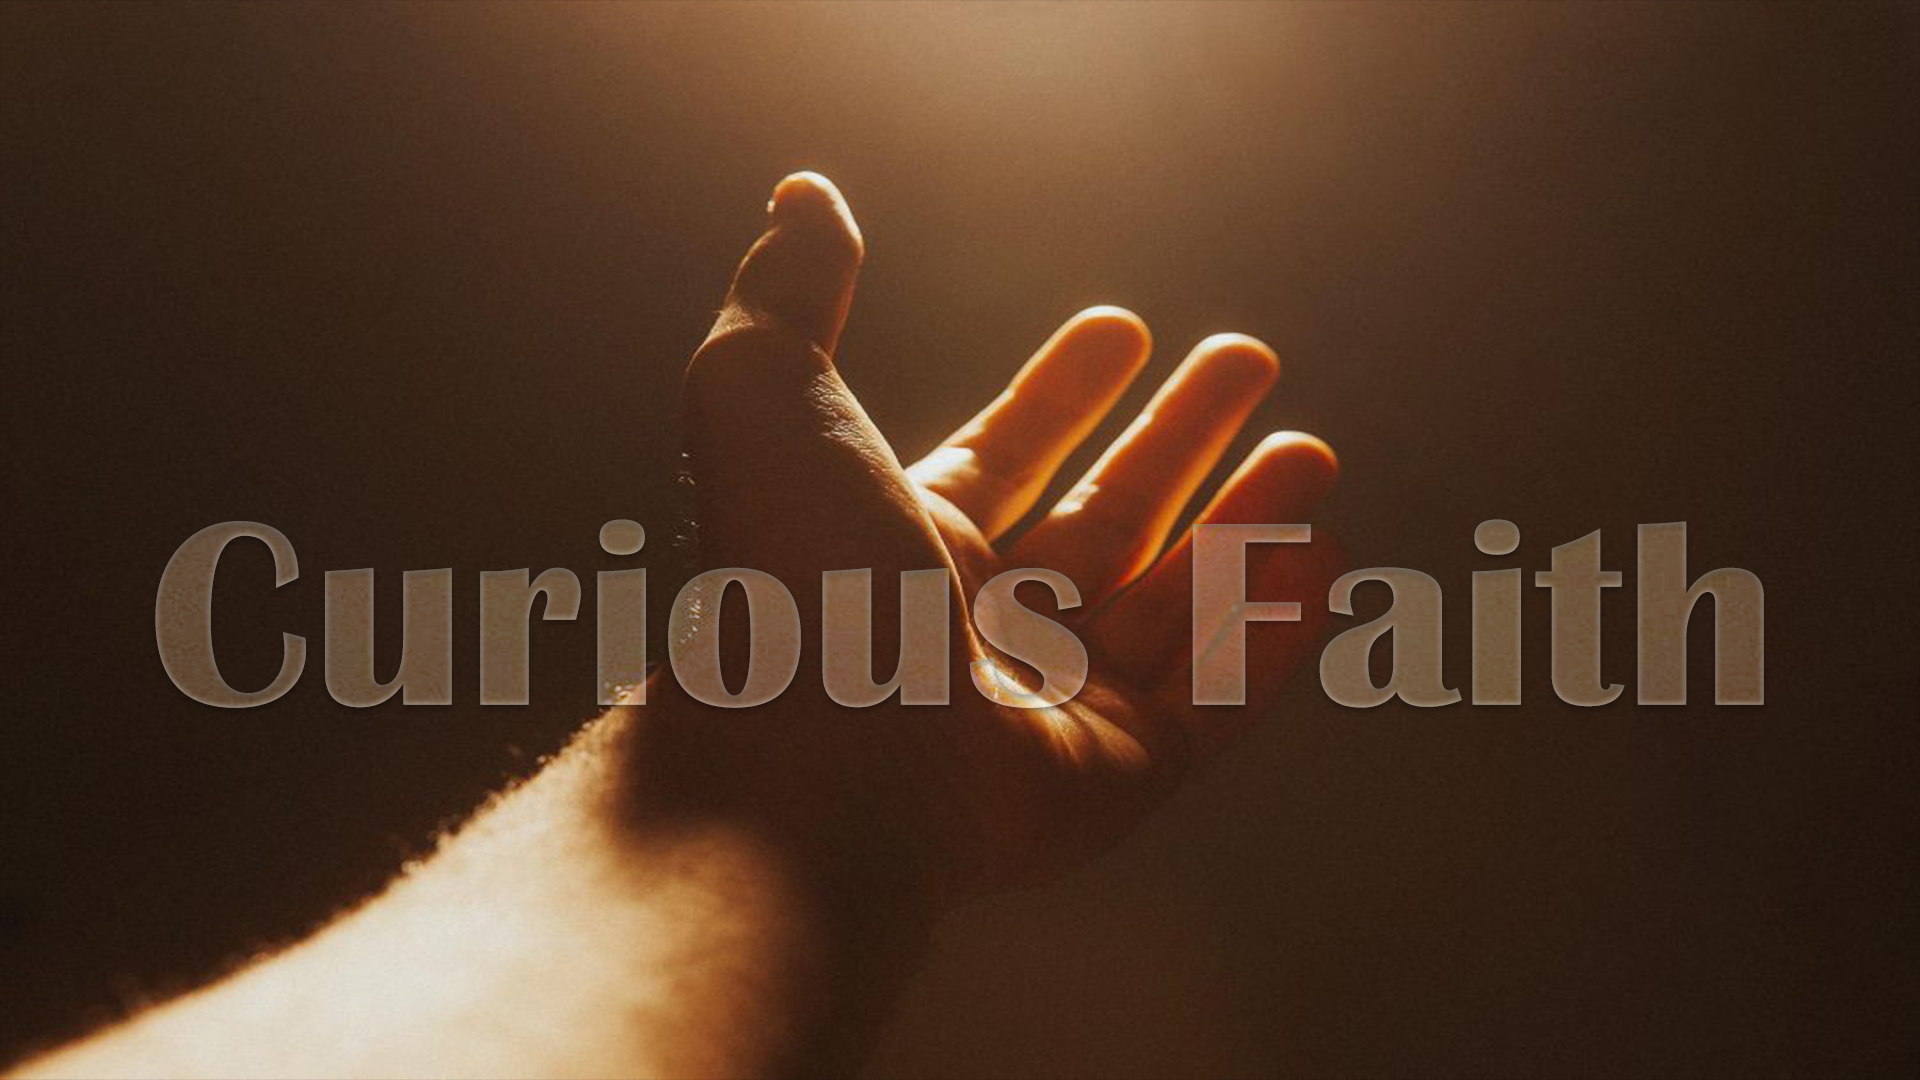 Curious faith - A Voice From Hell